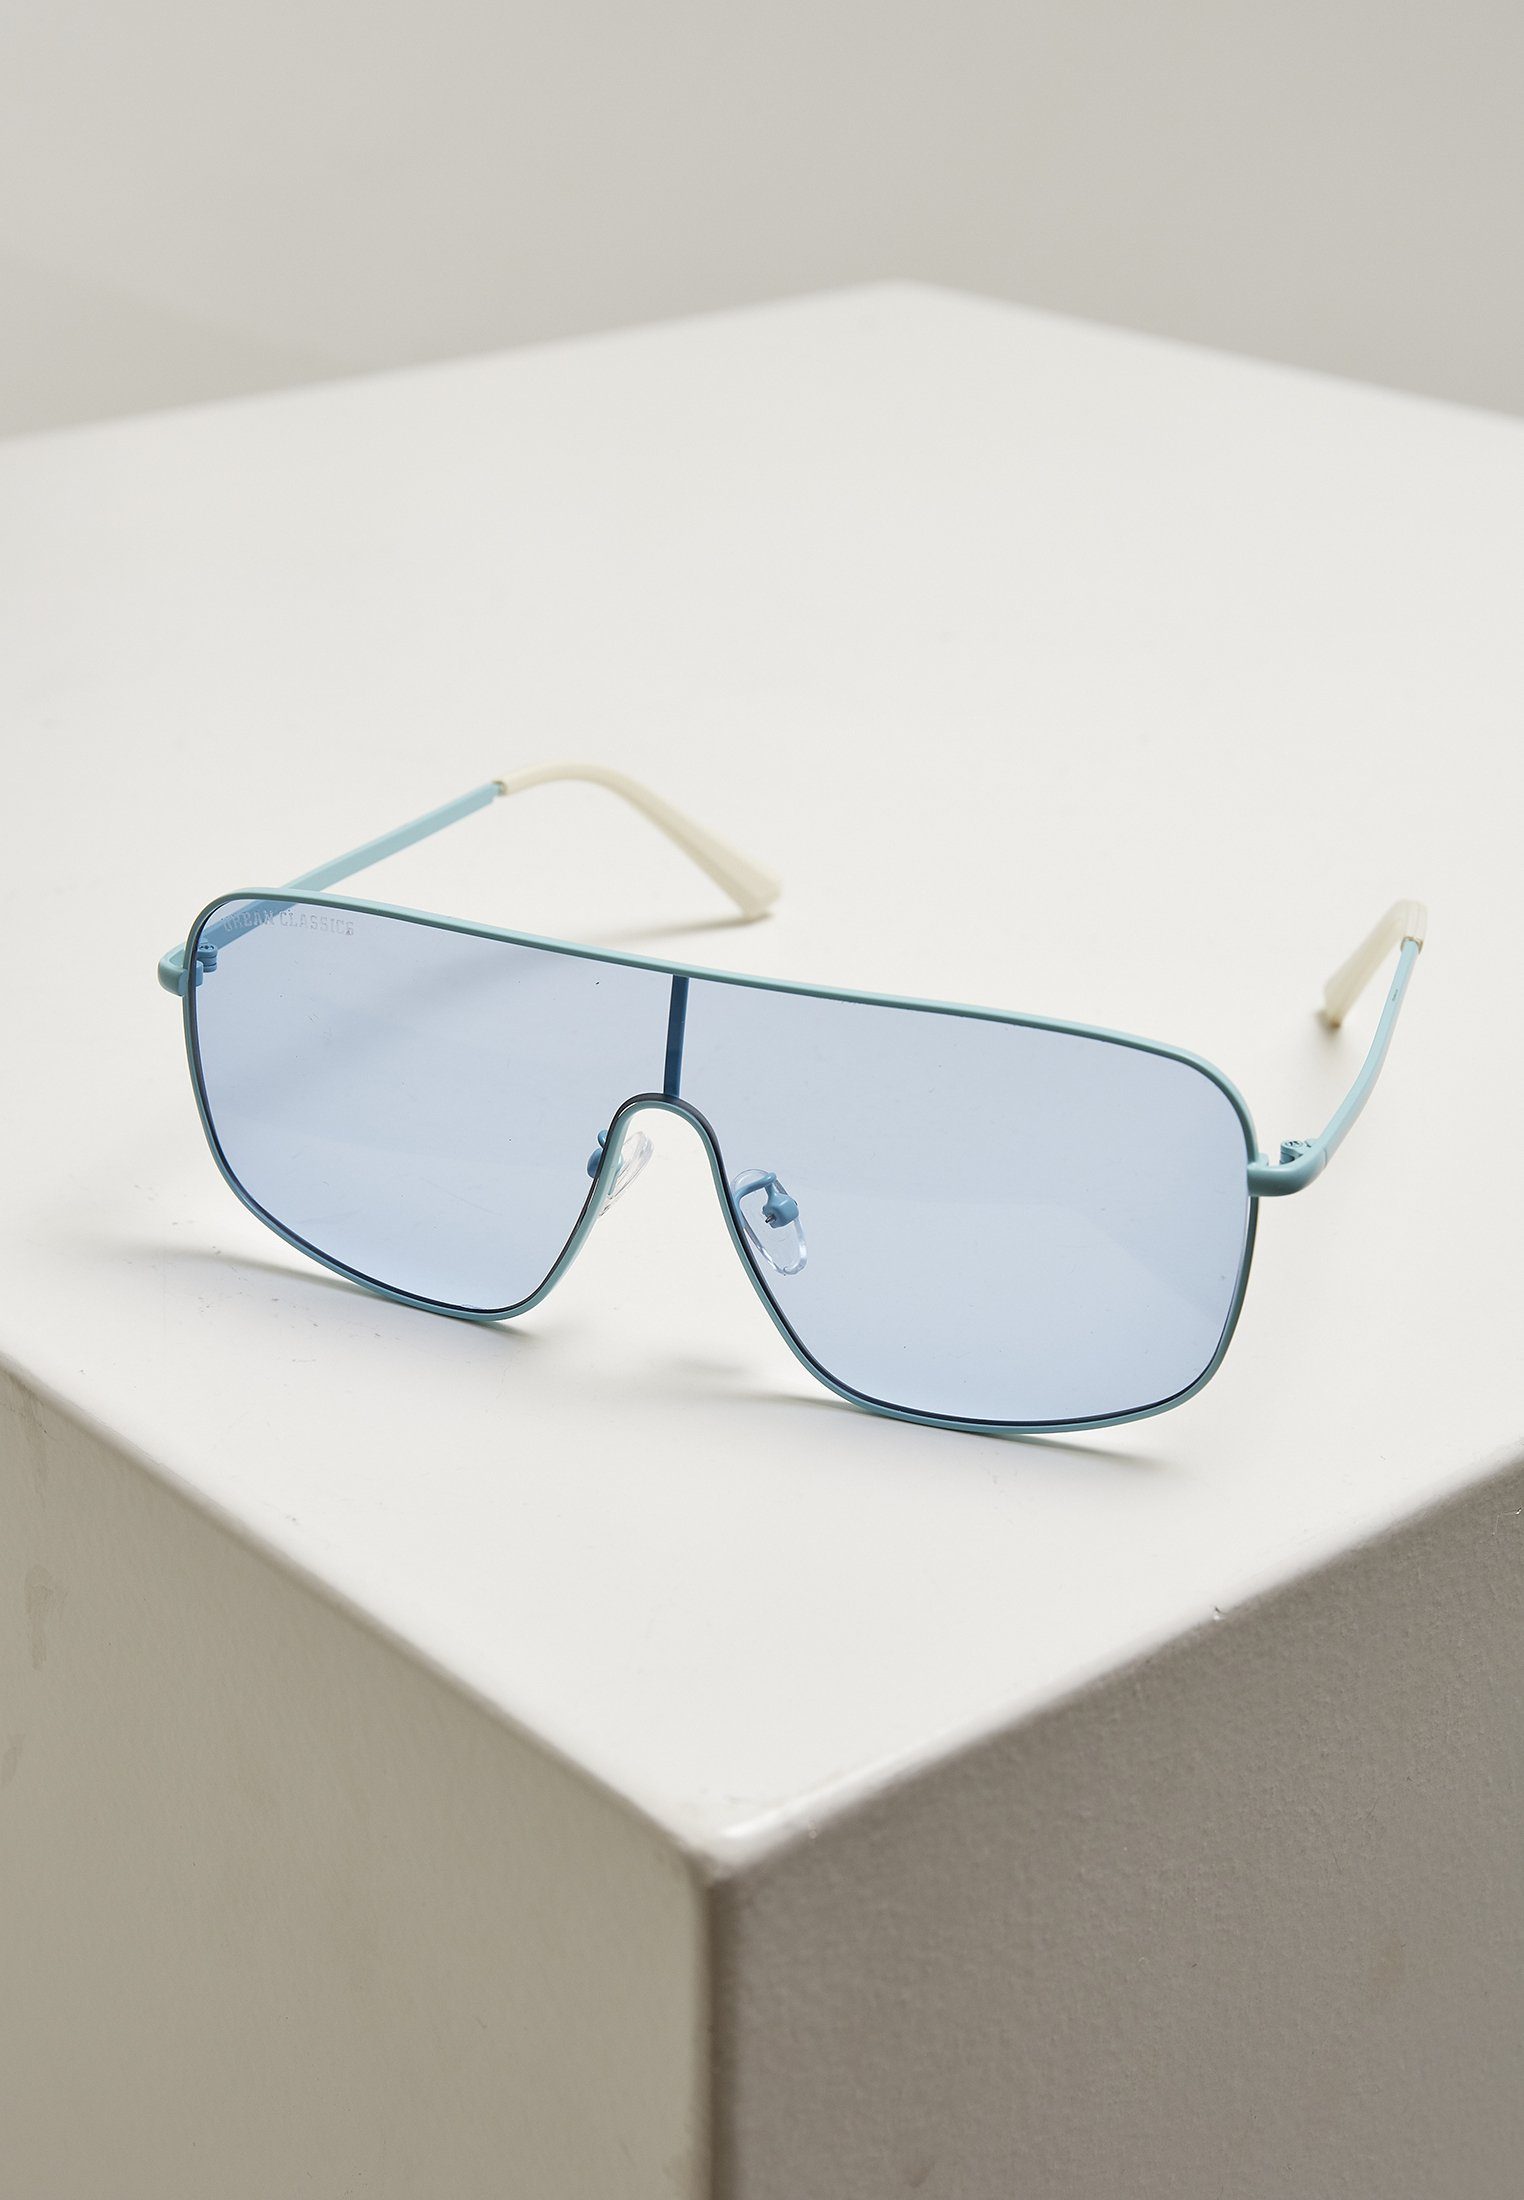 Sunglasses California Unisex lightblue Sonnenbrille CLASSICS URBAN